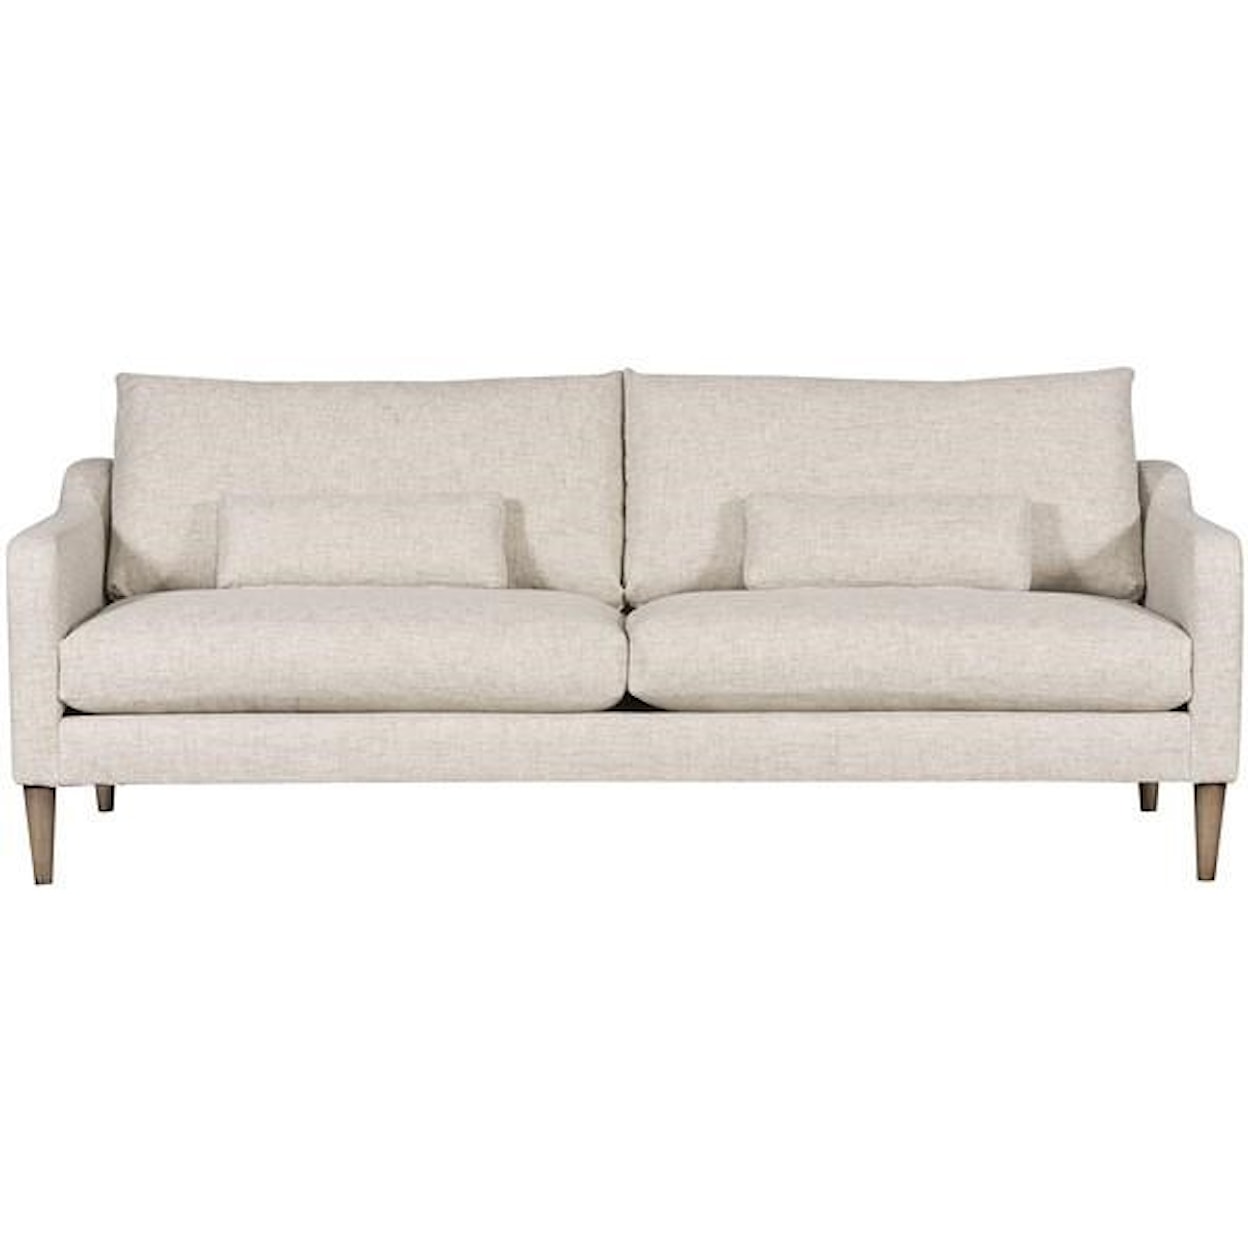 Vanguard Furniture Thea - Ease Upholstery Thea Sofa